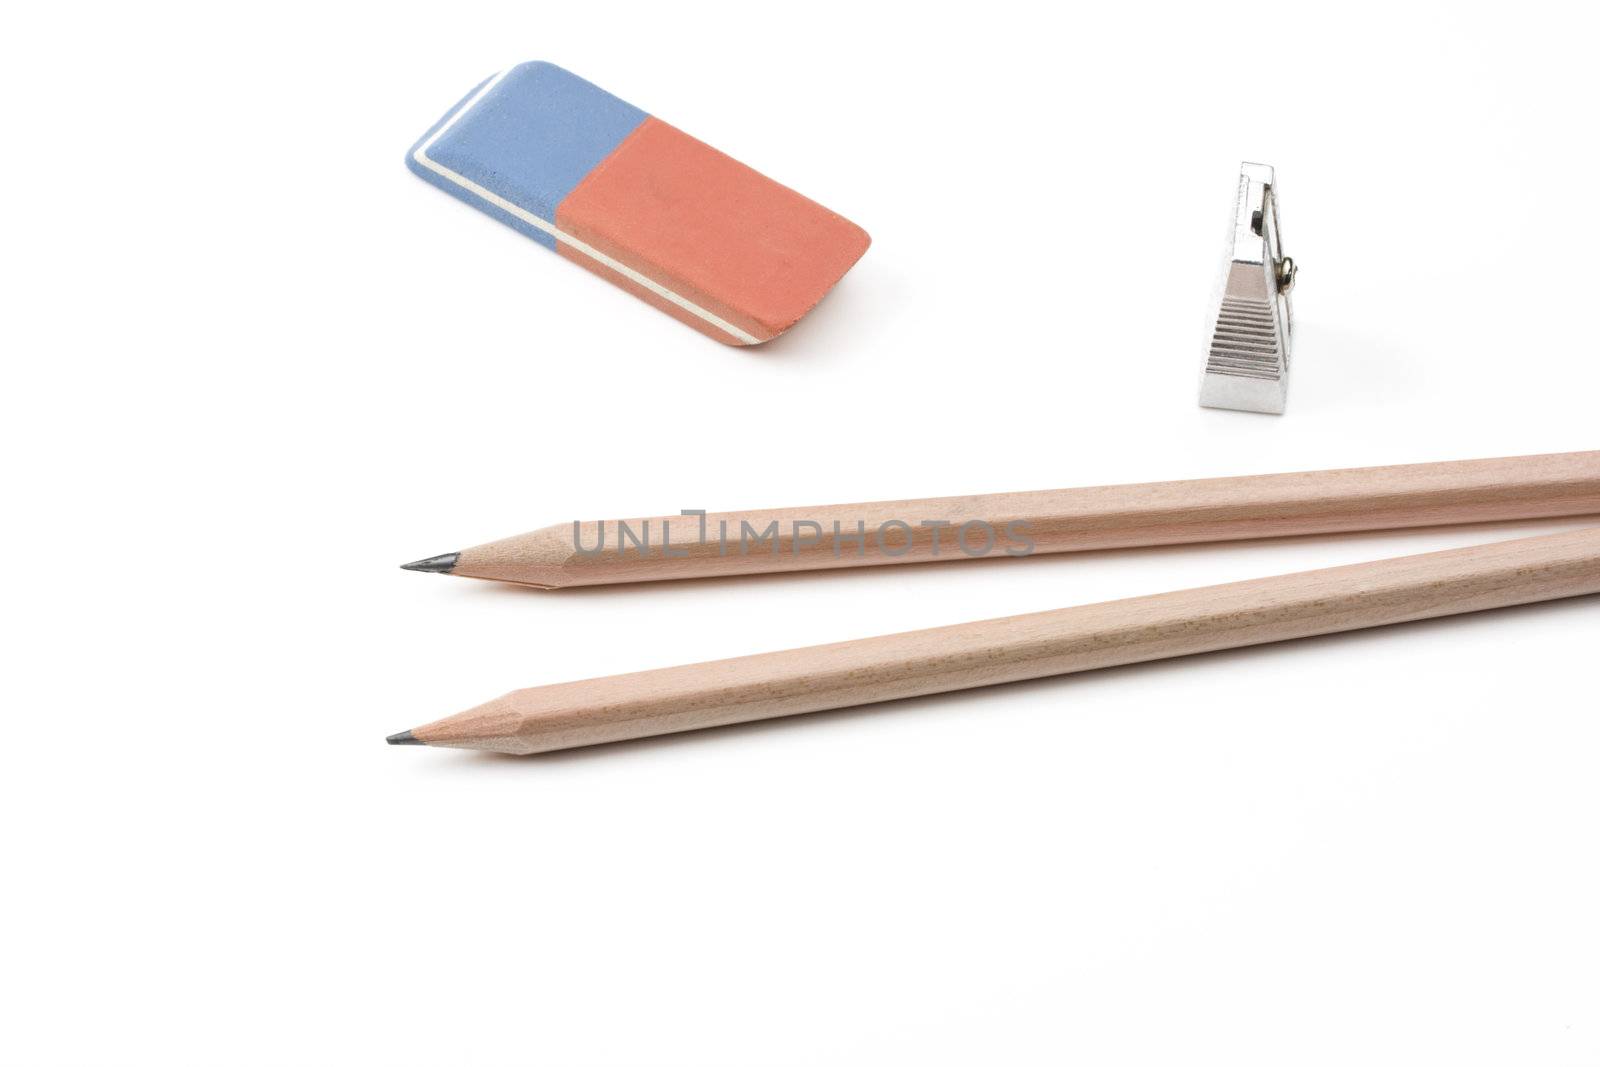 a pen, a sharpener and an eraser by bernjuer